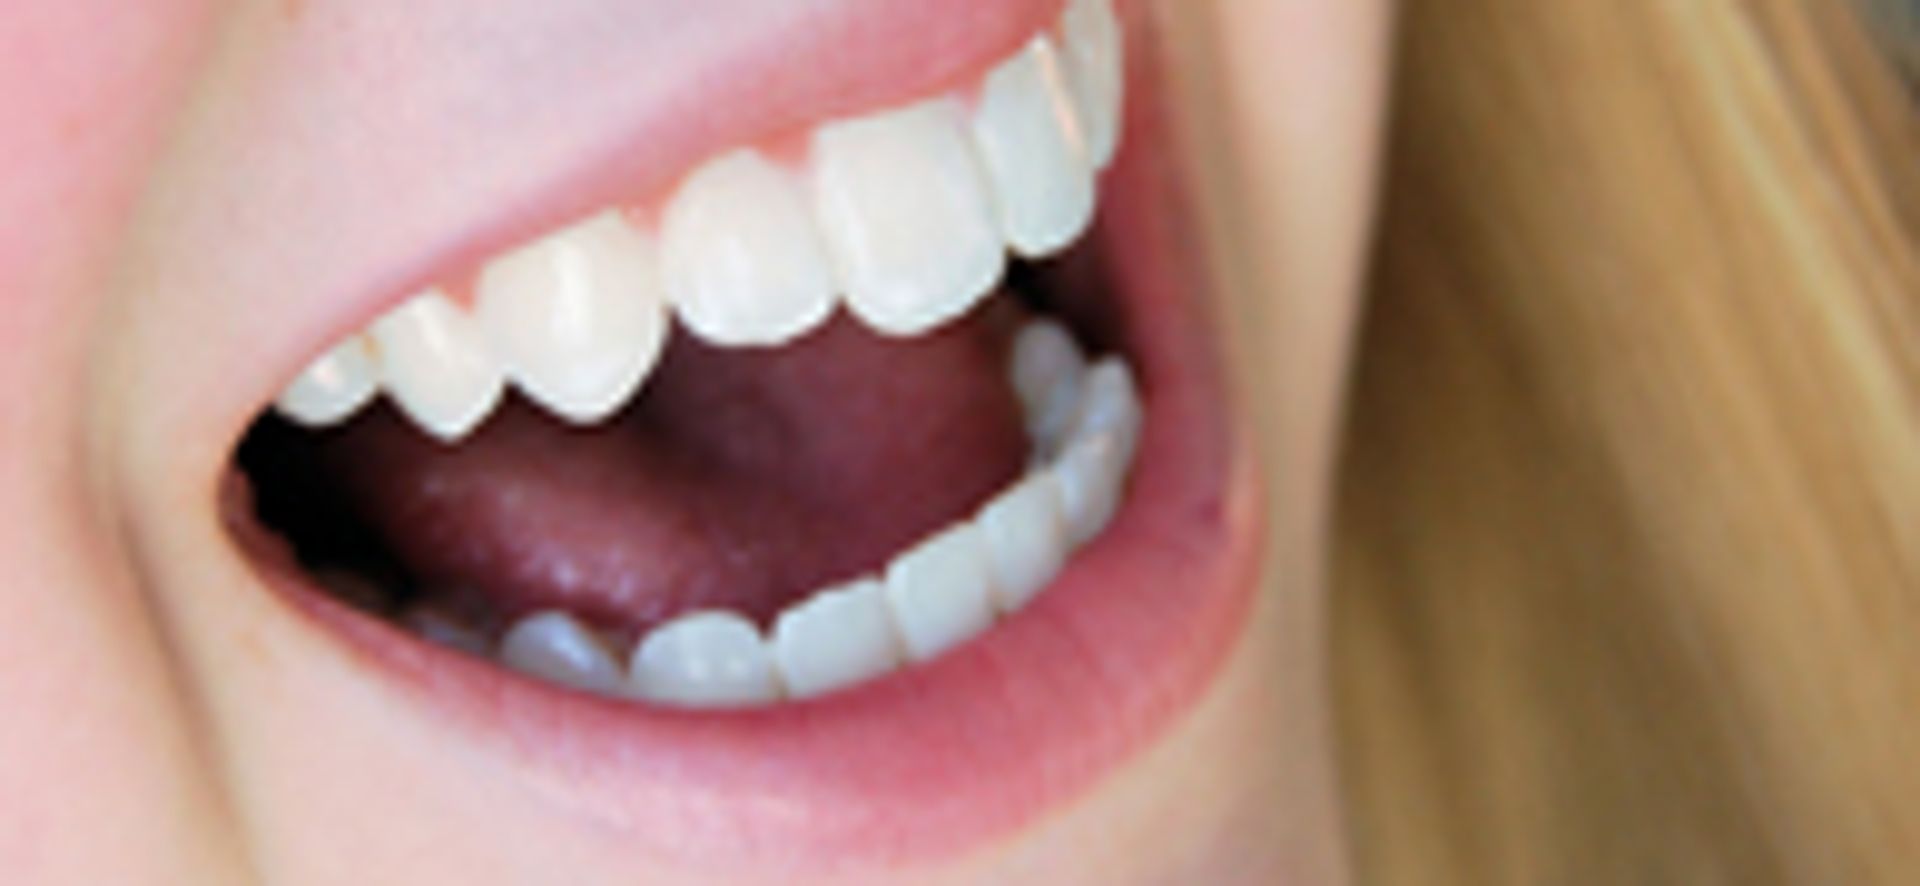 Tanden bleken niet geheel zonder - Kassa -